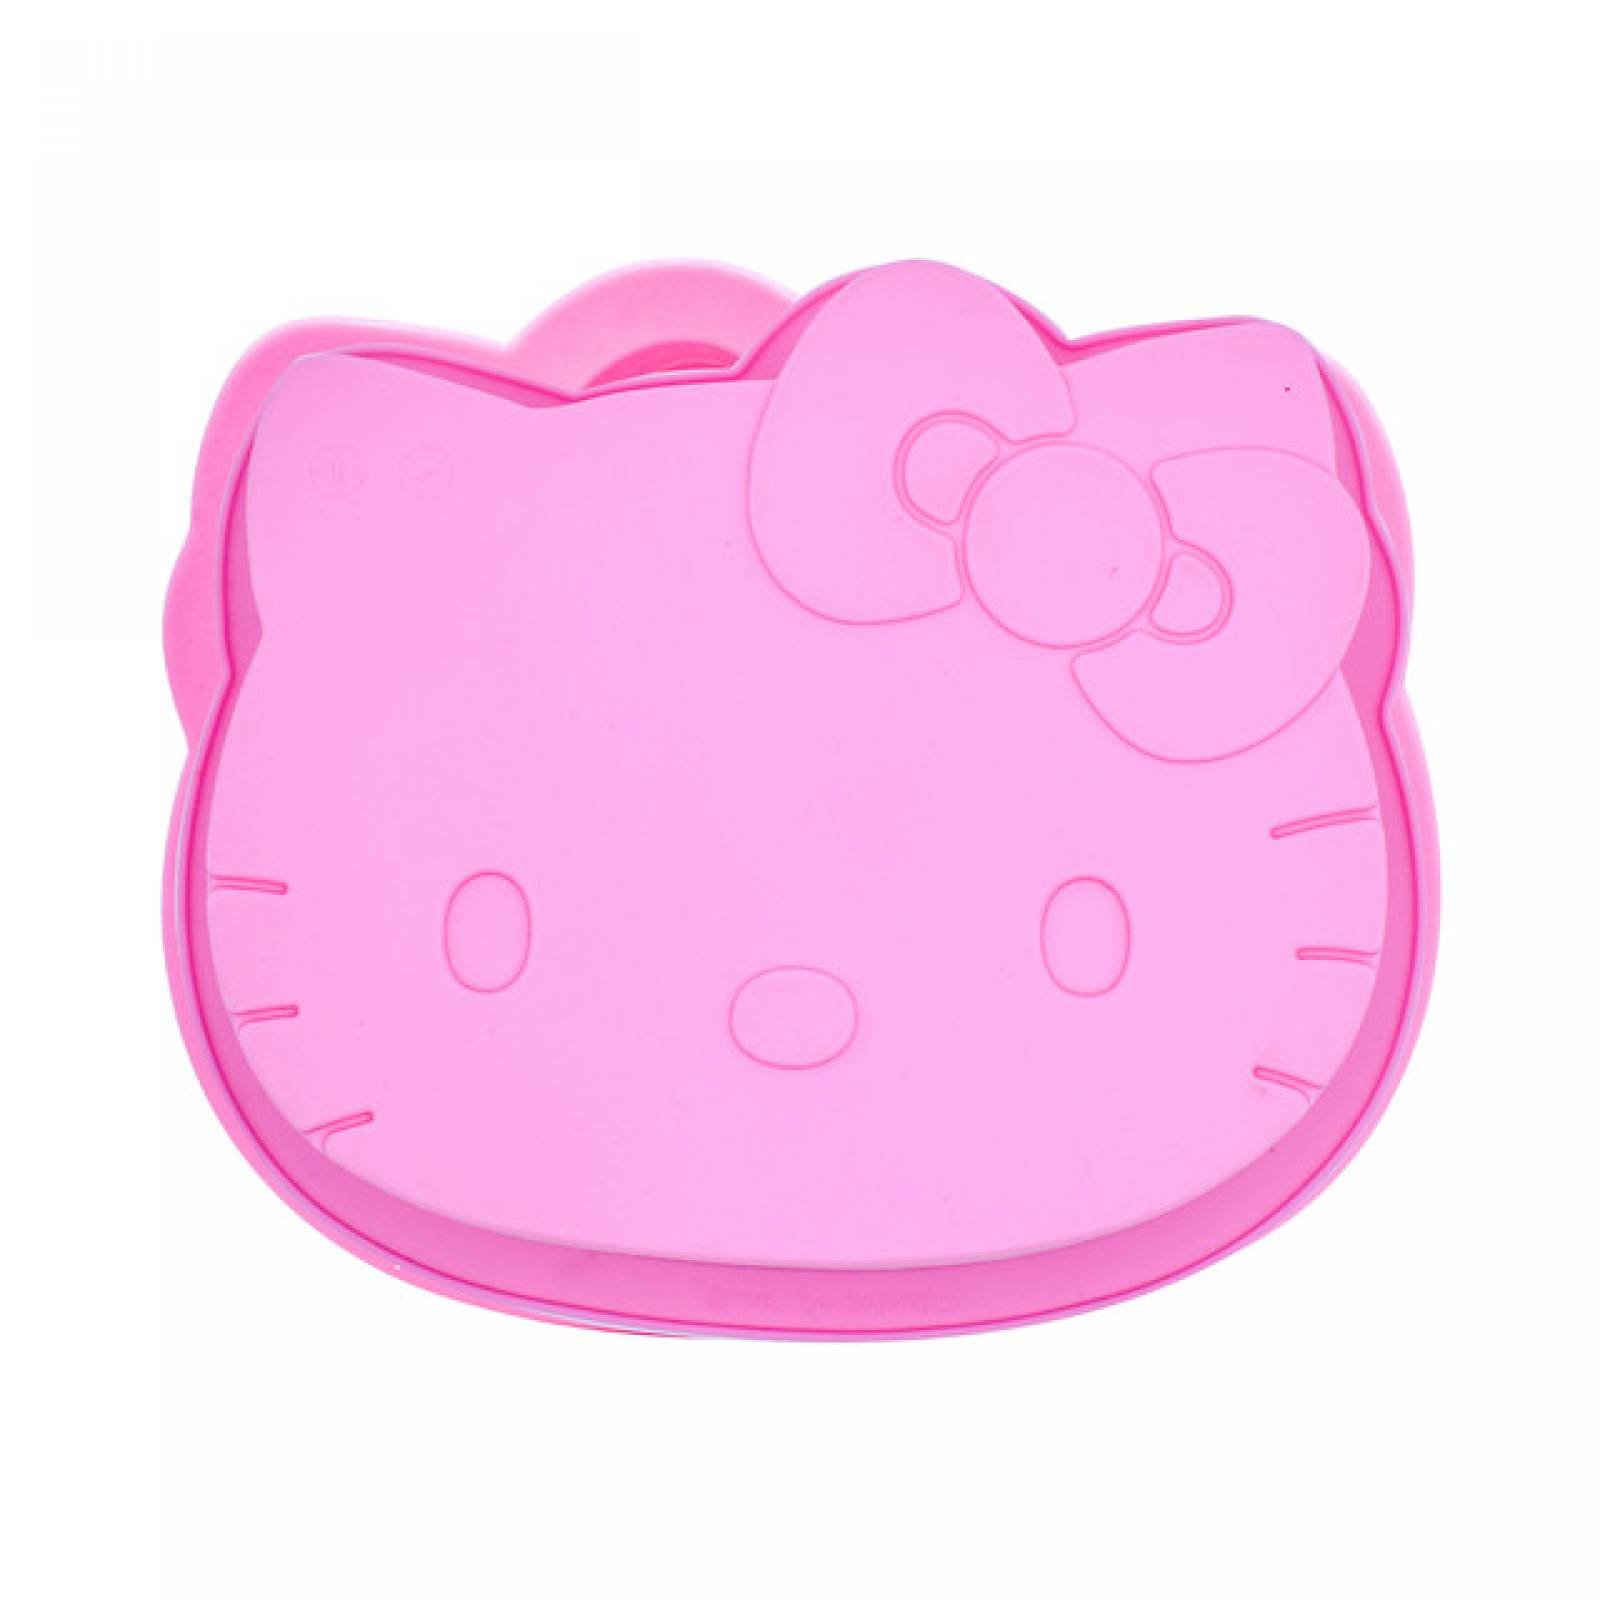 Stor 1594-640 Molde de Silicon para Pastel y Gelatina tamano Chico con Forma de Hello Kitty color Rosa para Hornear de uso Reposteria